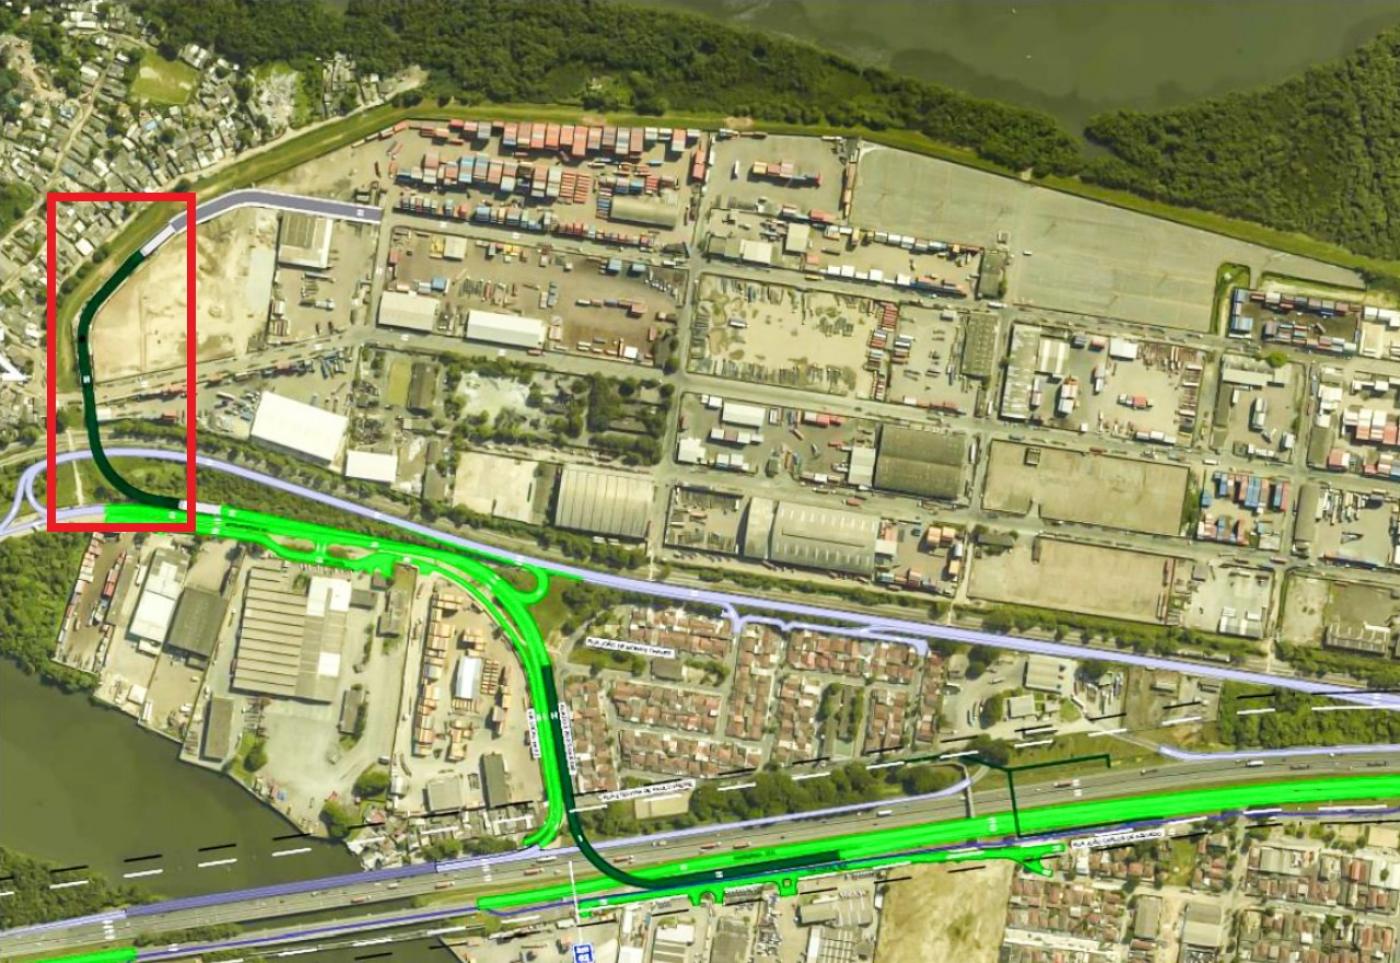 mapa da entrada da cidade e área retroportuária, com demarcação do local onde poderá ficar nova rota. #paratodosverem